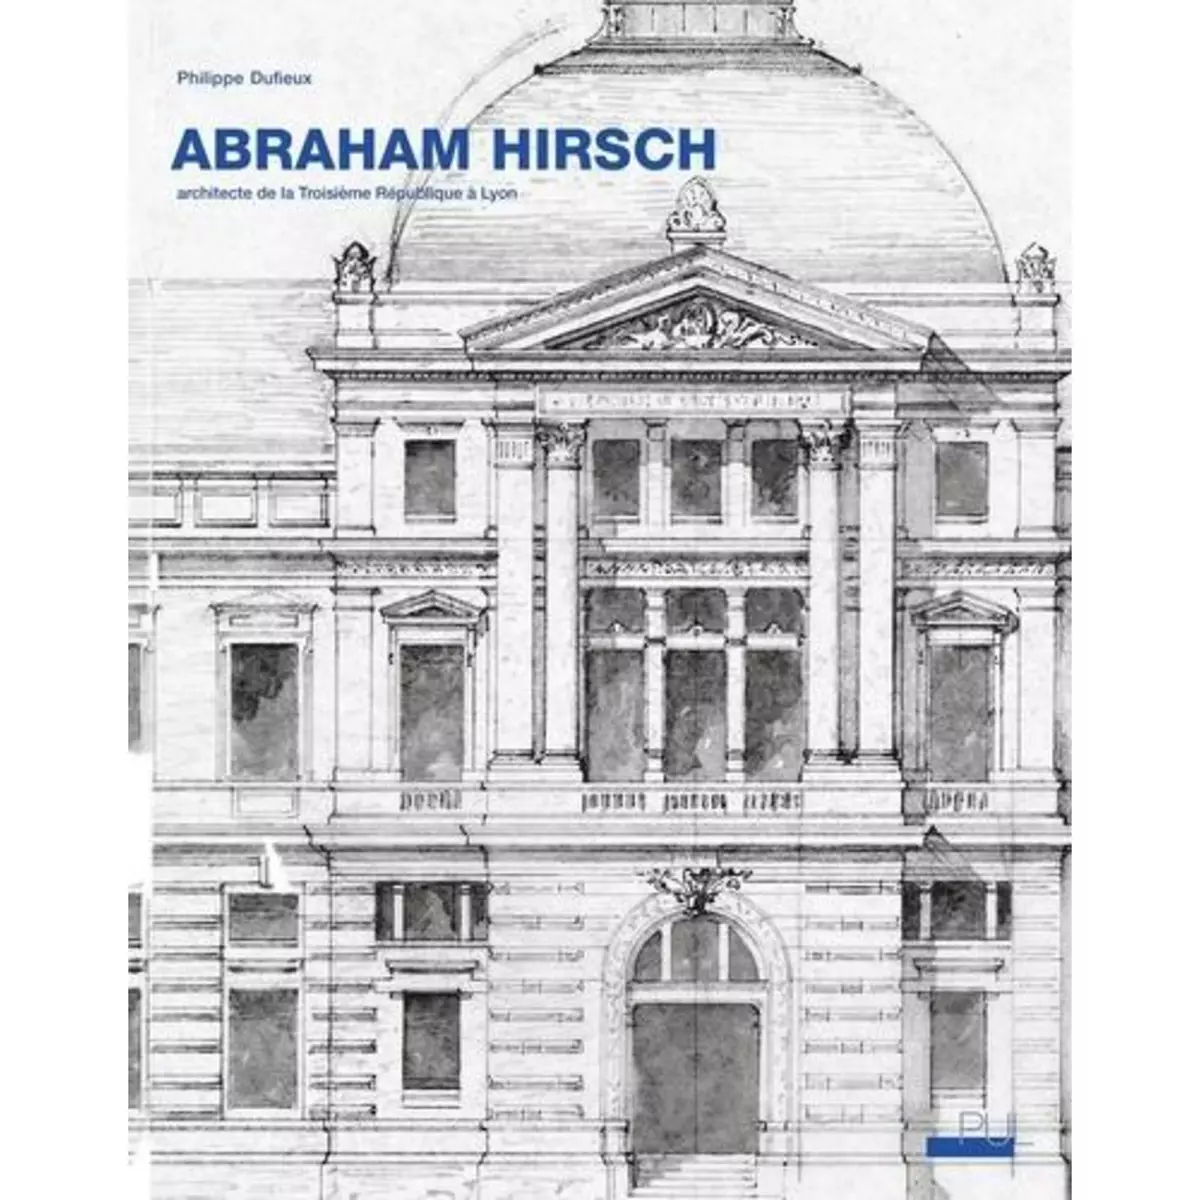  ABRAHAM HIRSCH (1828-1913). ARCHITECTE DE LA TROISIEME REPUBLIQUE A LYON, Dufieux Philippe